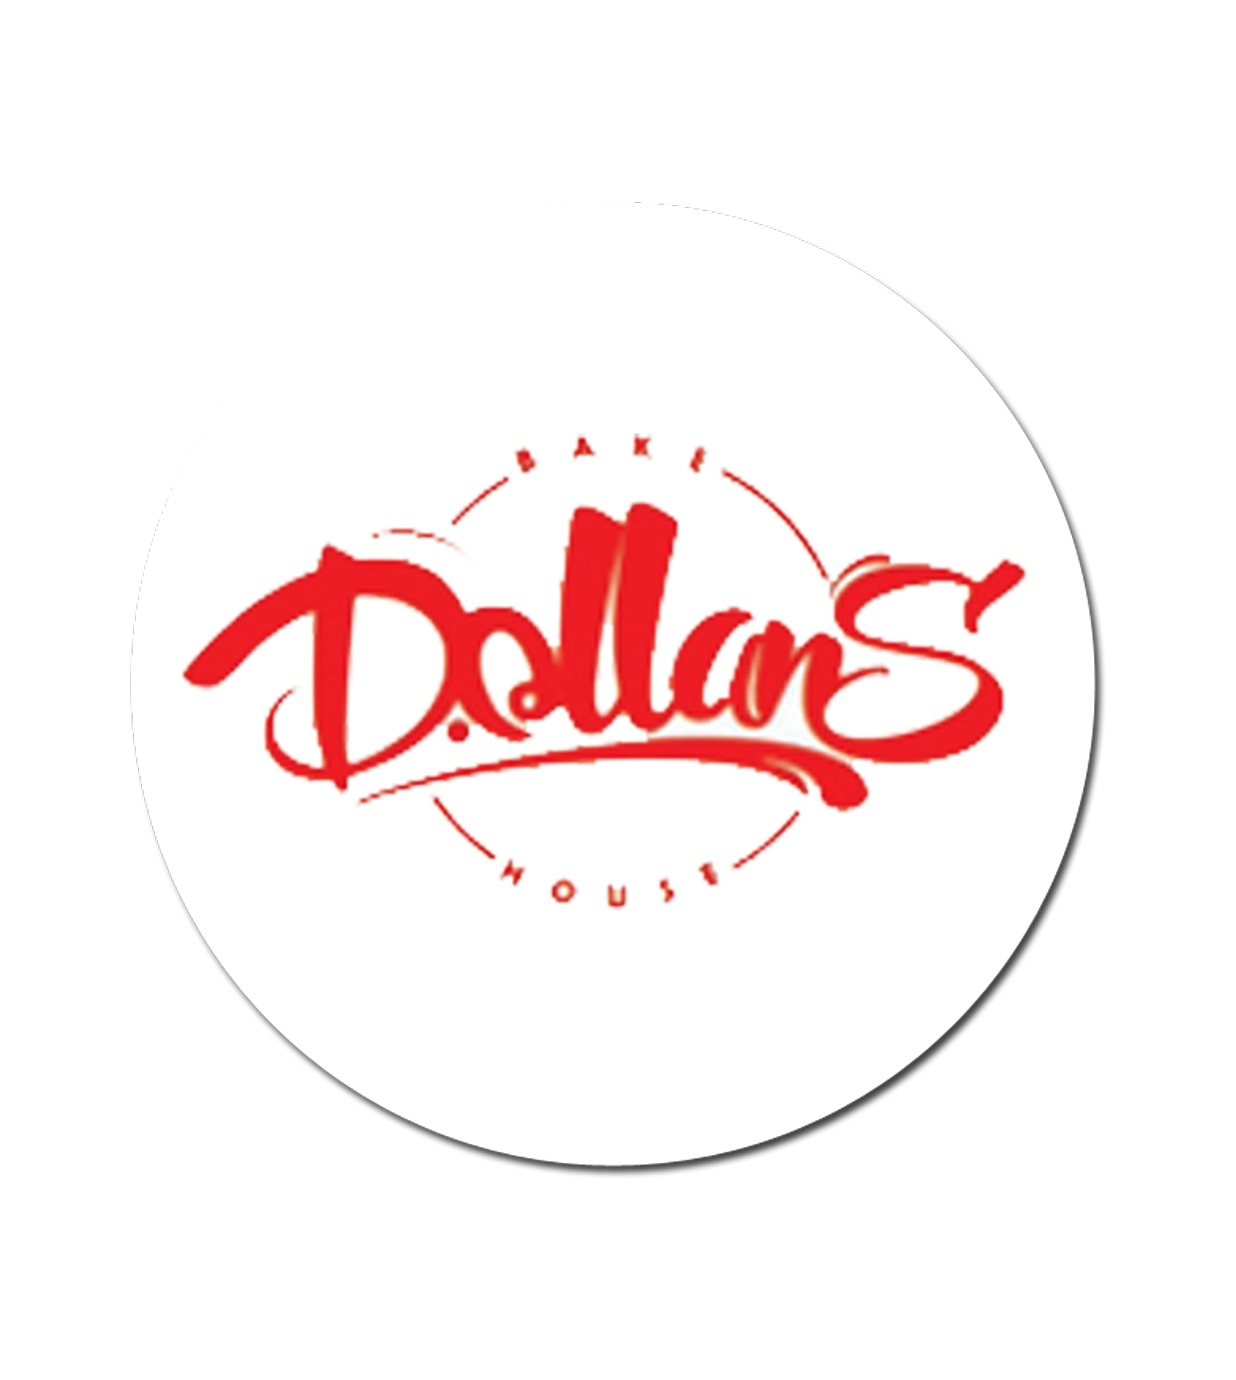 Dollans-logo ultraswift